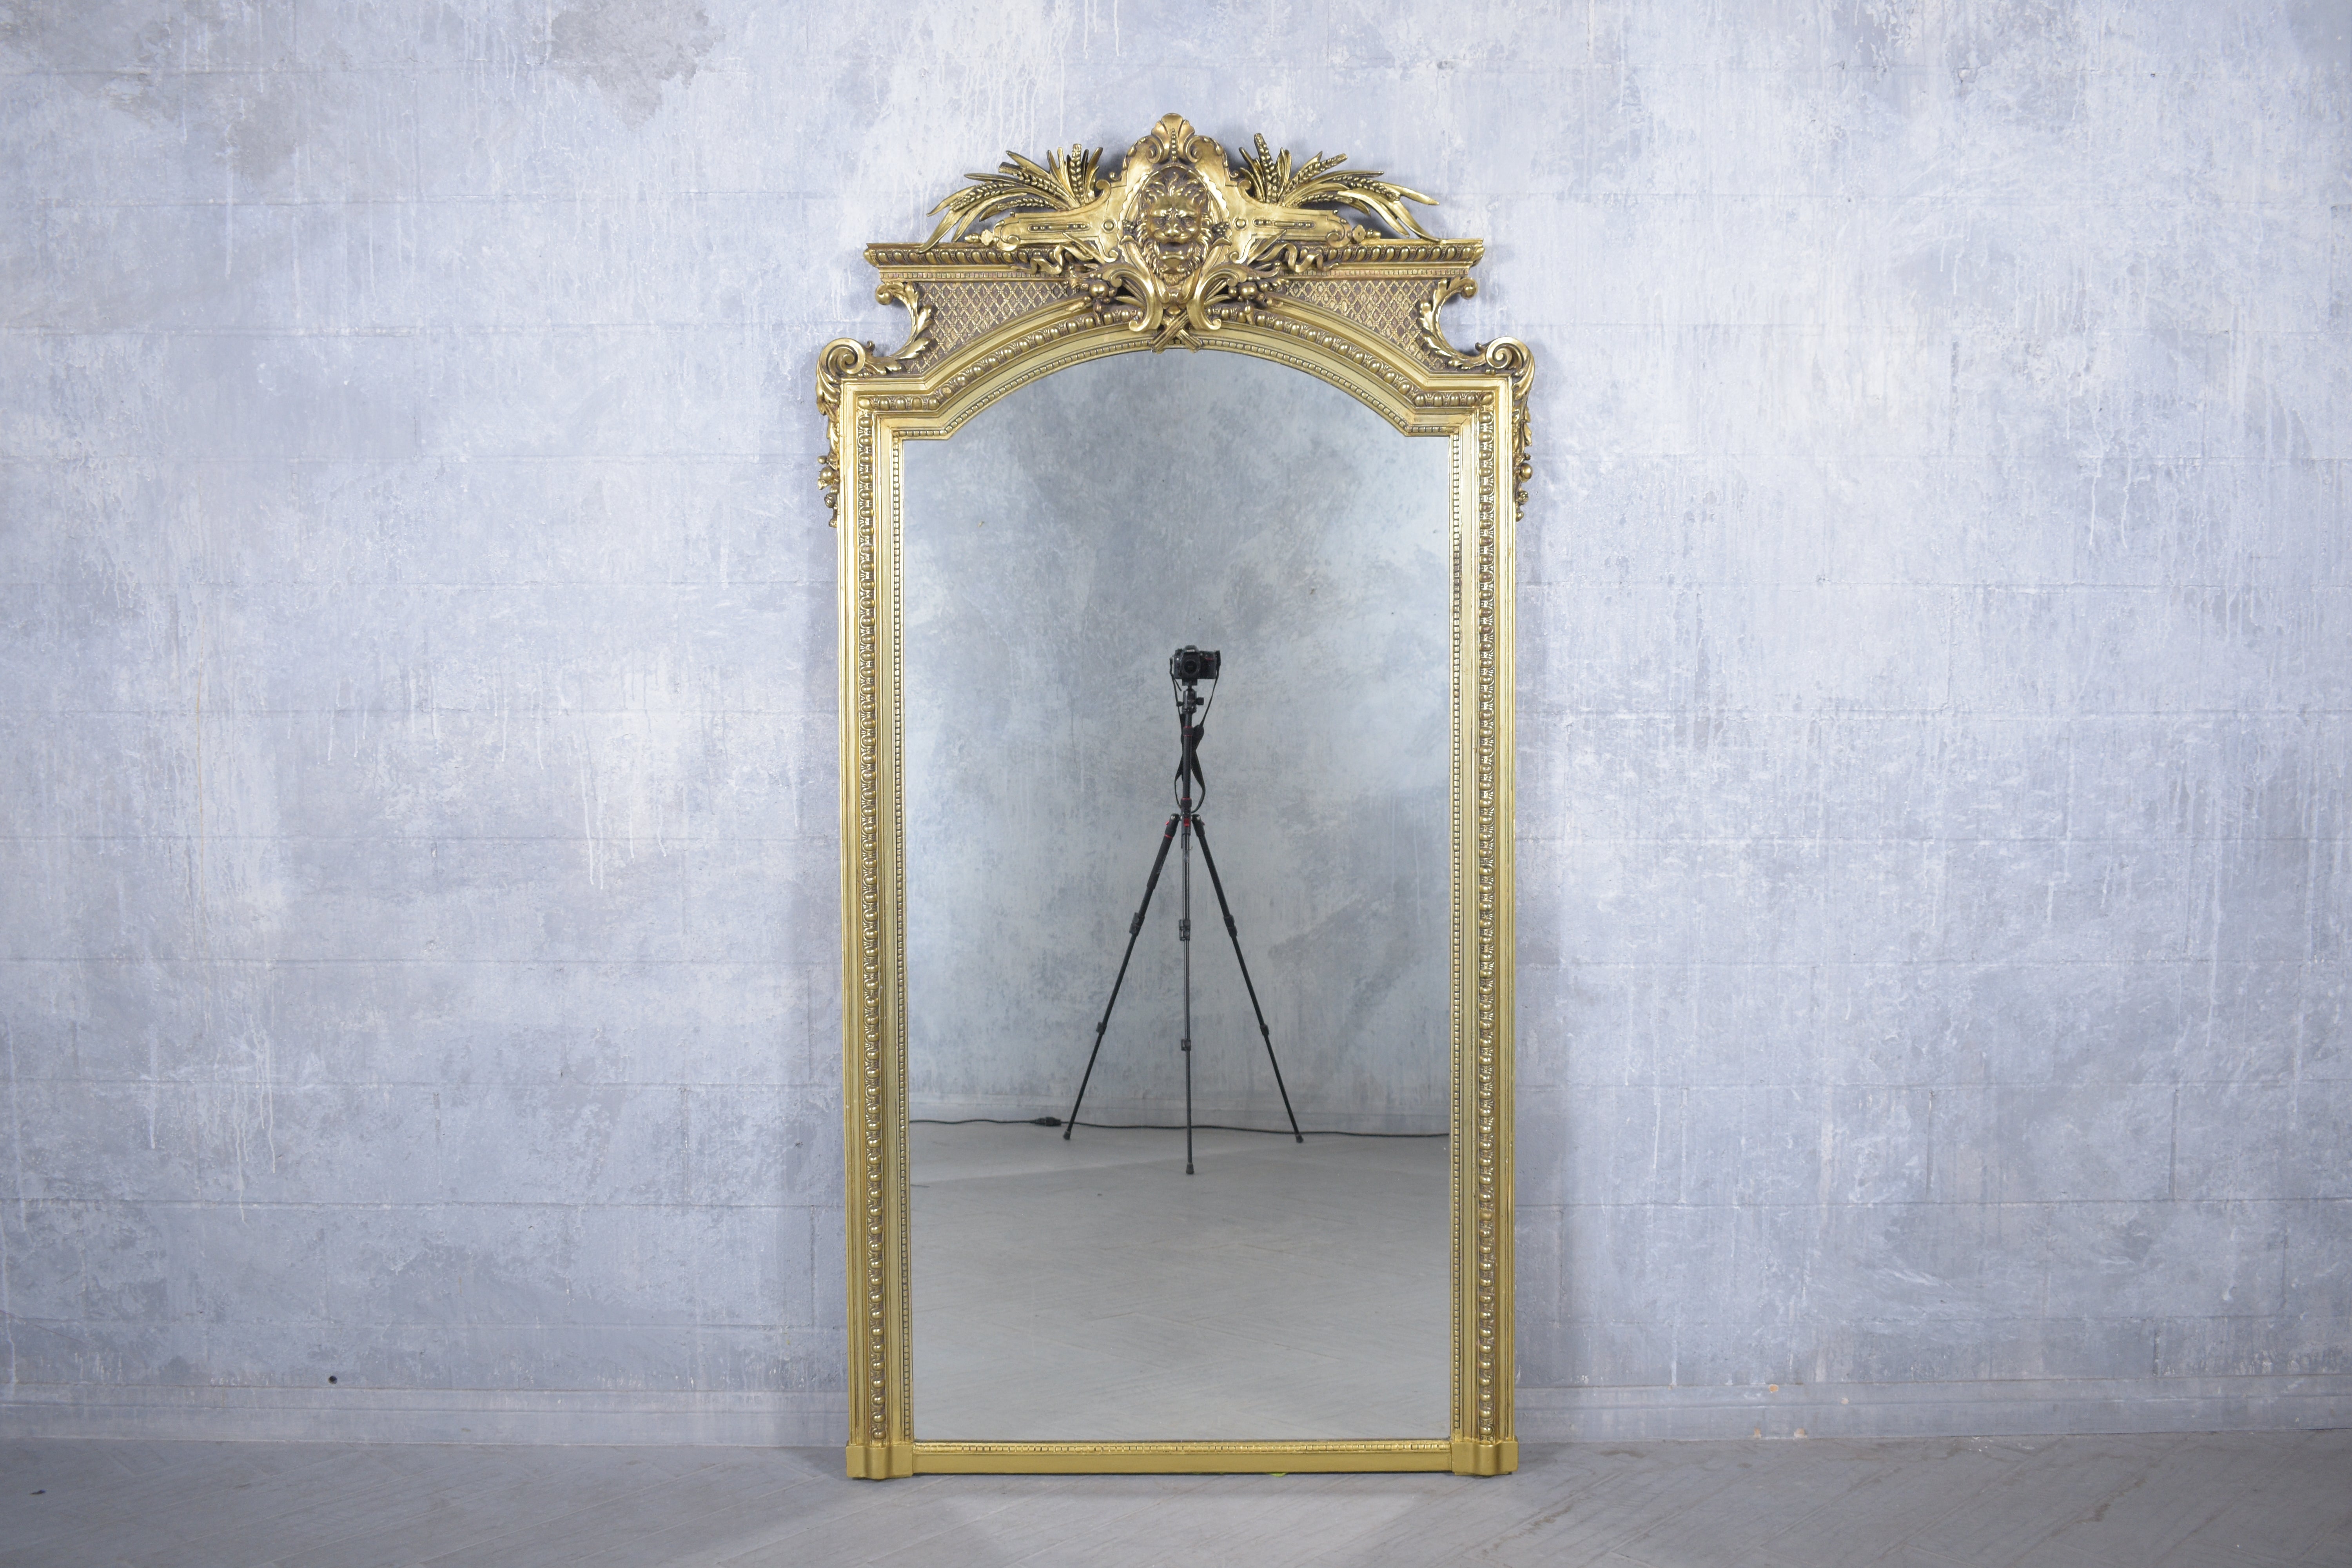 Entrez dans le monde de l'élégance française classique avec notre miroir sur pied de la fin du XIXe siècle, méticuleusement restauré pour mettre en valeur ses qualités artistiques et artisanales. Fabriqué à partir de bois massif de première qualité